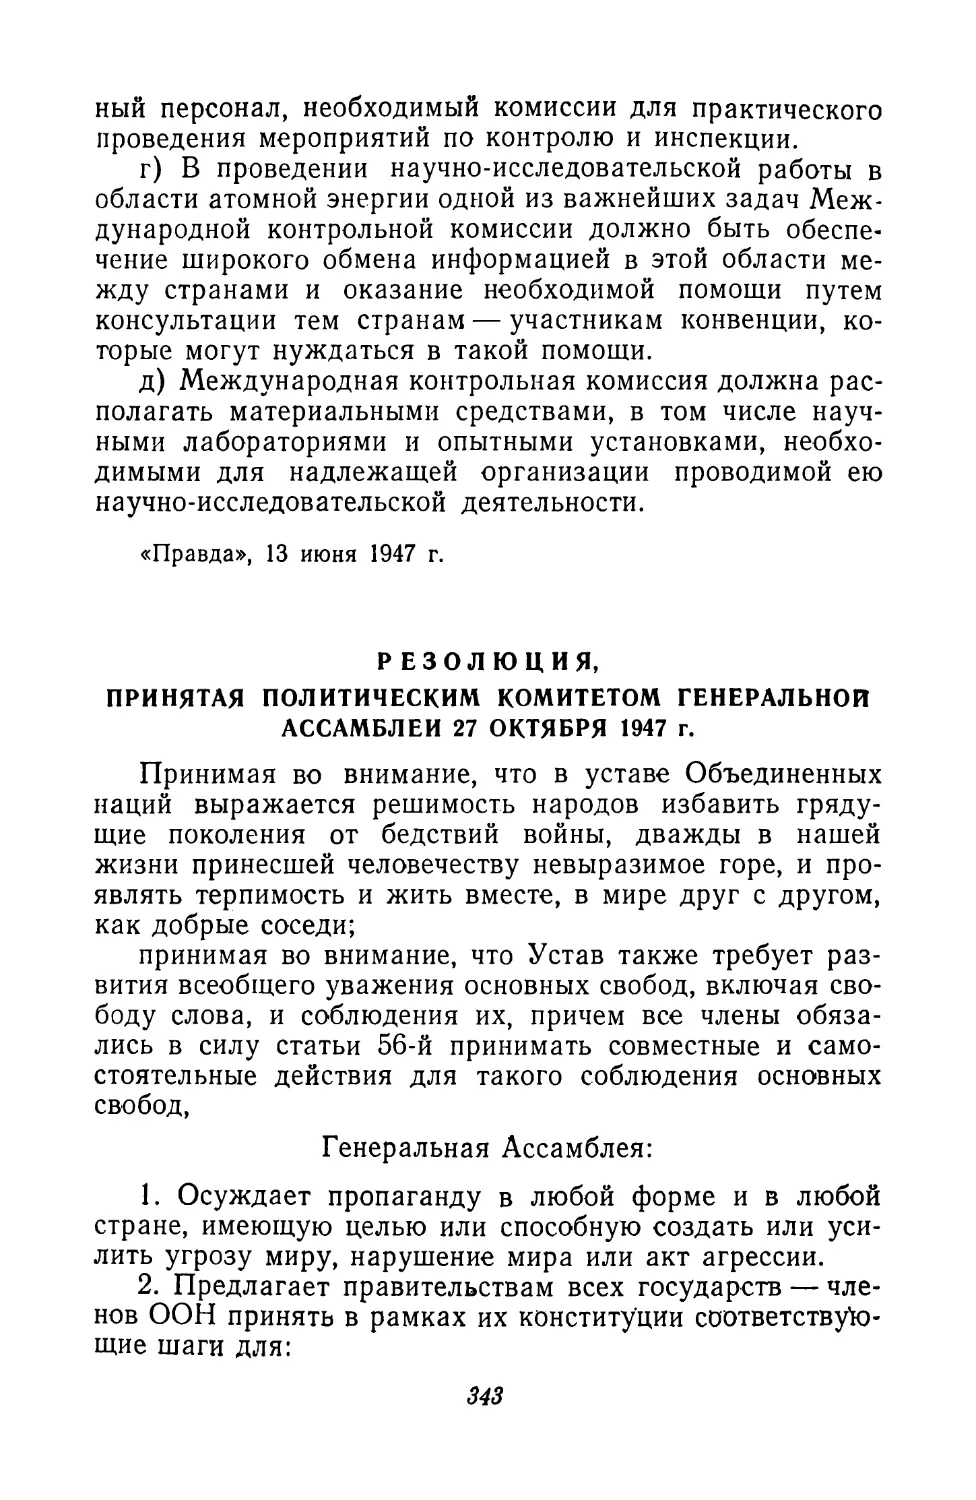 7. Резолюция, принятая Политическим комитетом Генеральной Ассамблеи 27 октября 1947 г